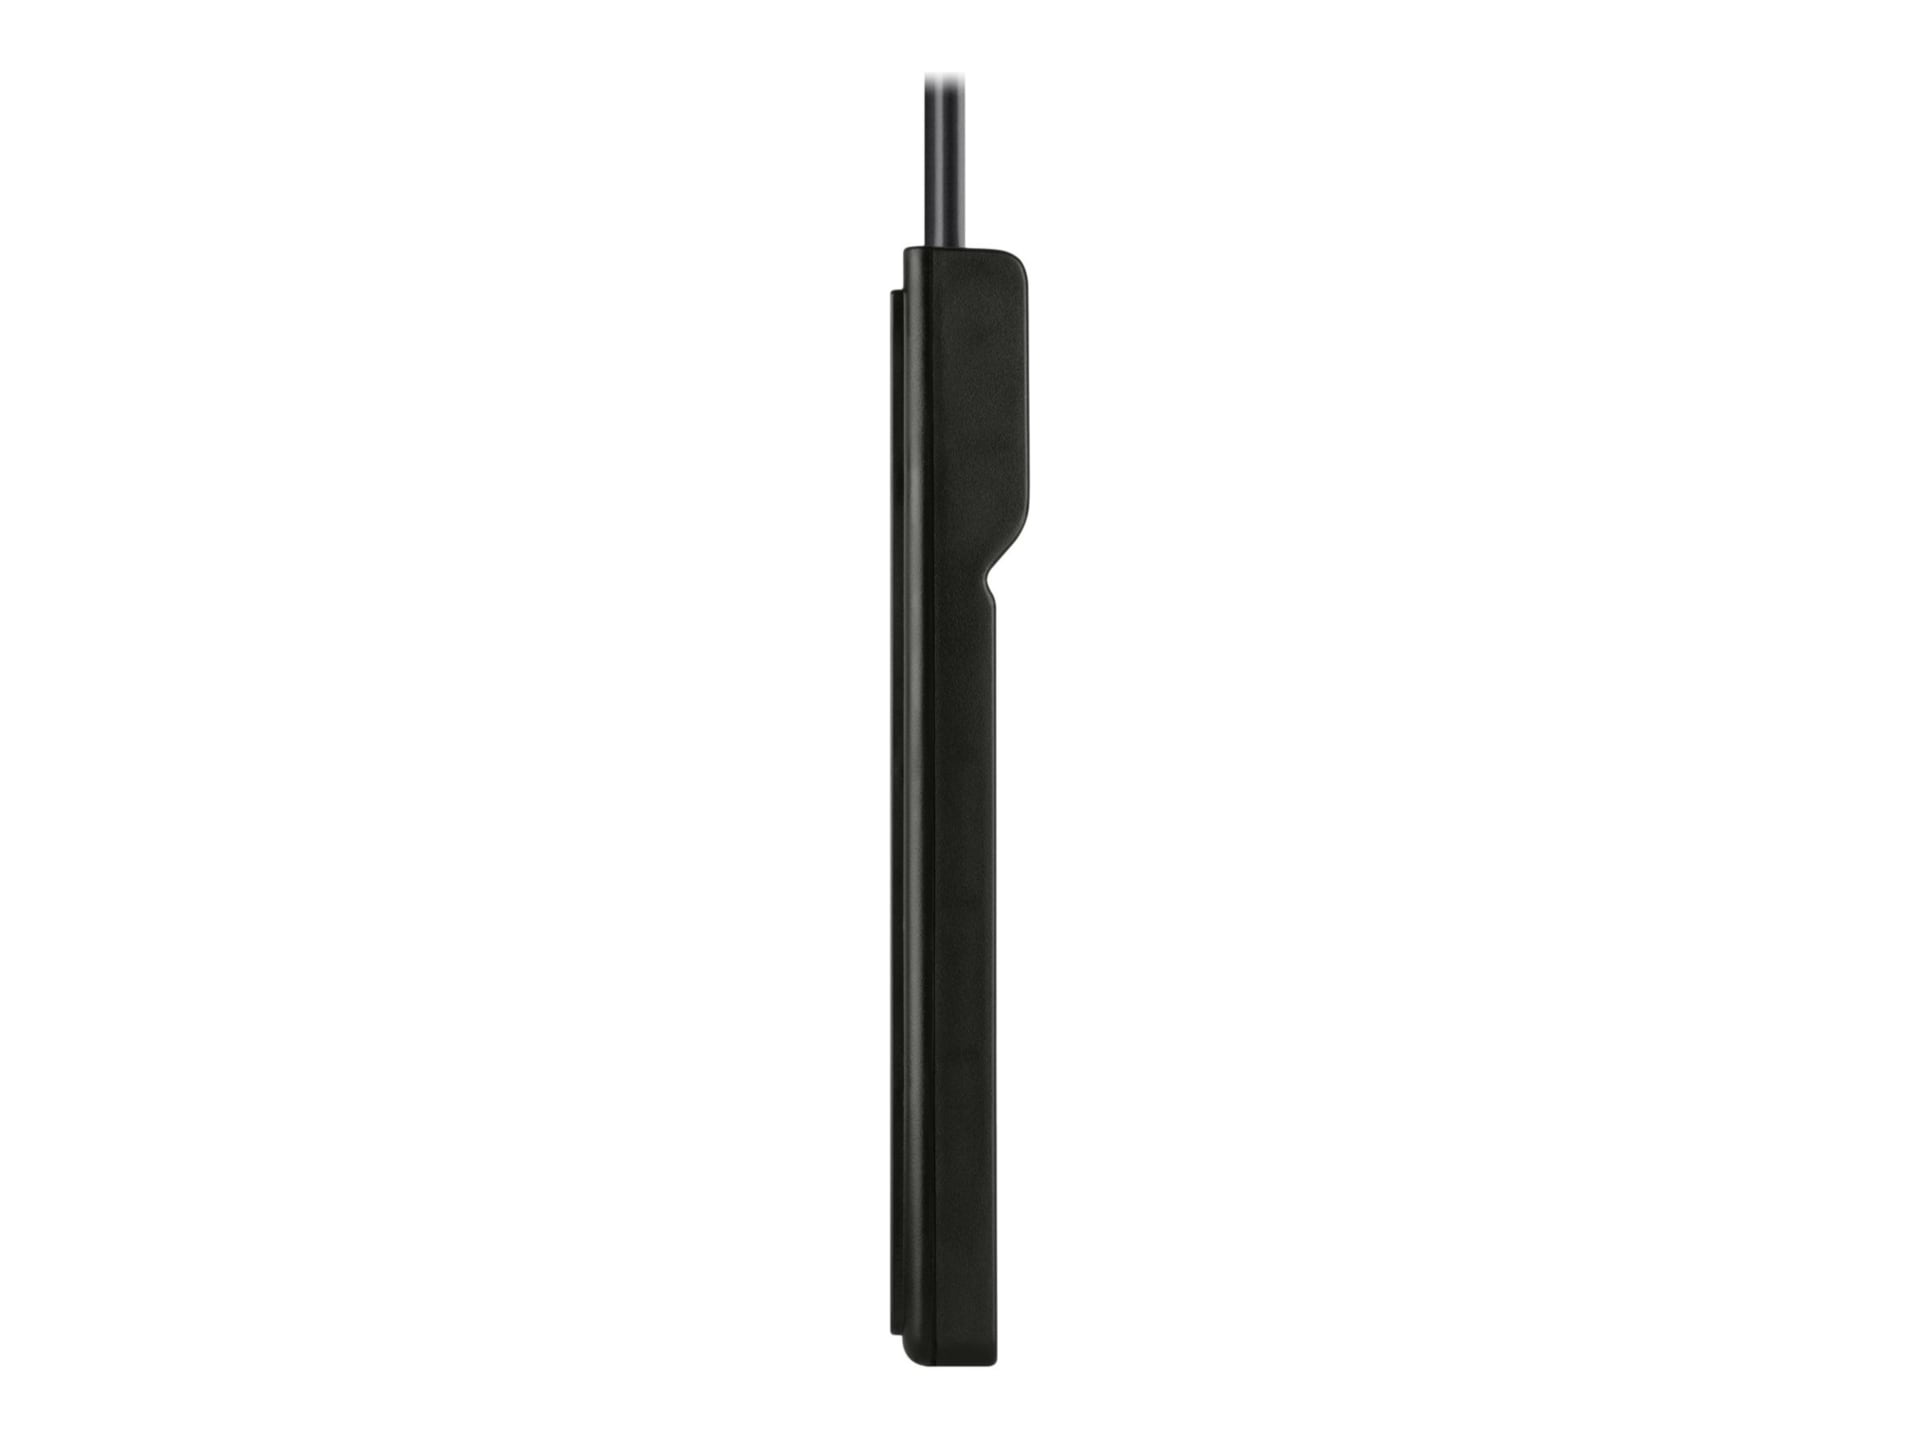 Belkin 6-Outlet Surge Protector - 6ft Cord - Rotating Plug - 720J - Black (3-pack)